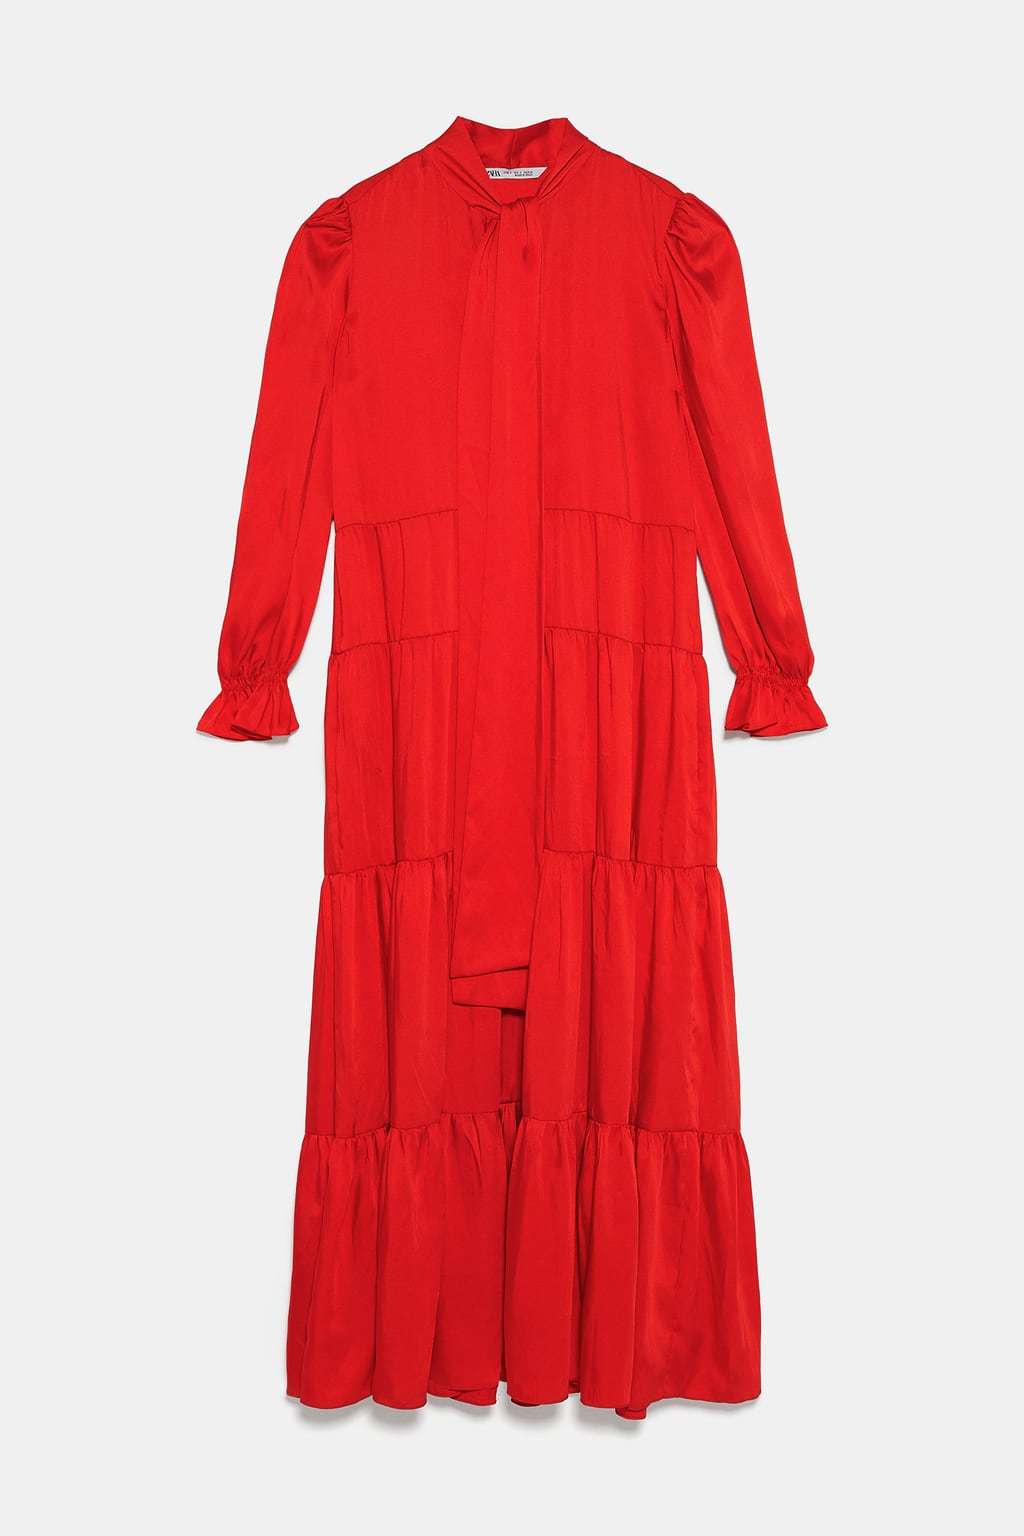 El vestido rojo de Zara, una de las mejores versiones del vestido boho...